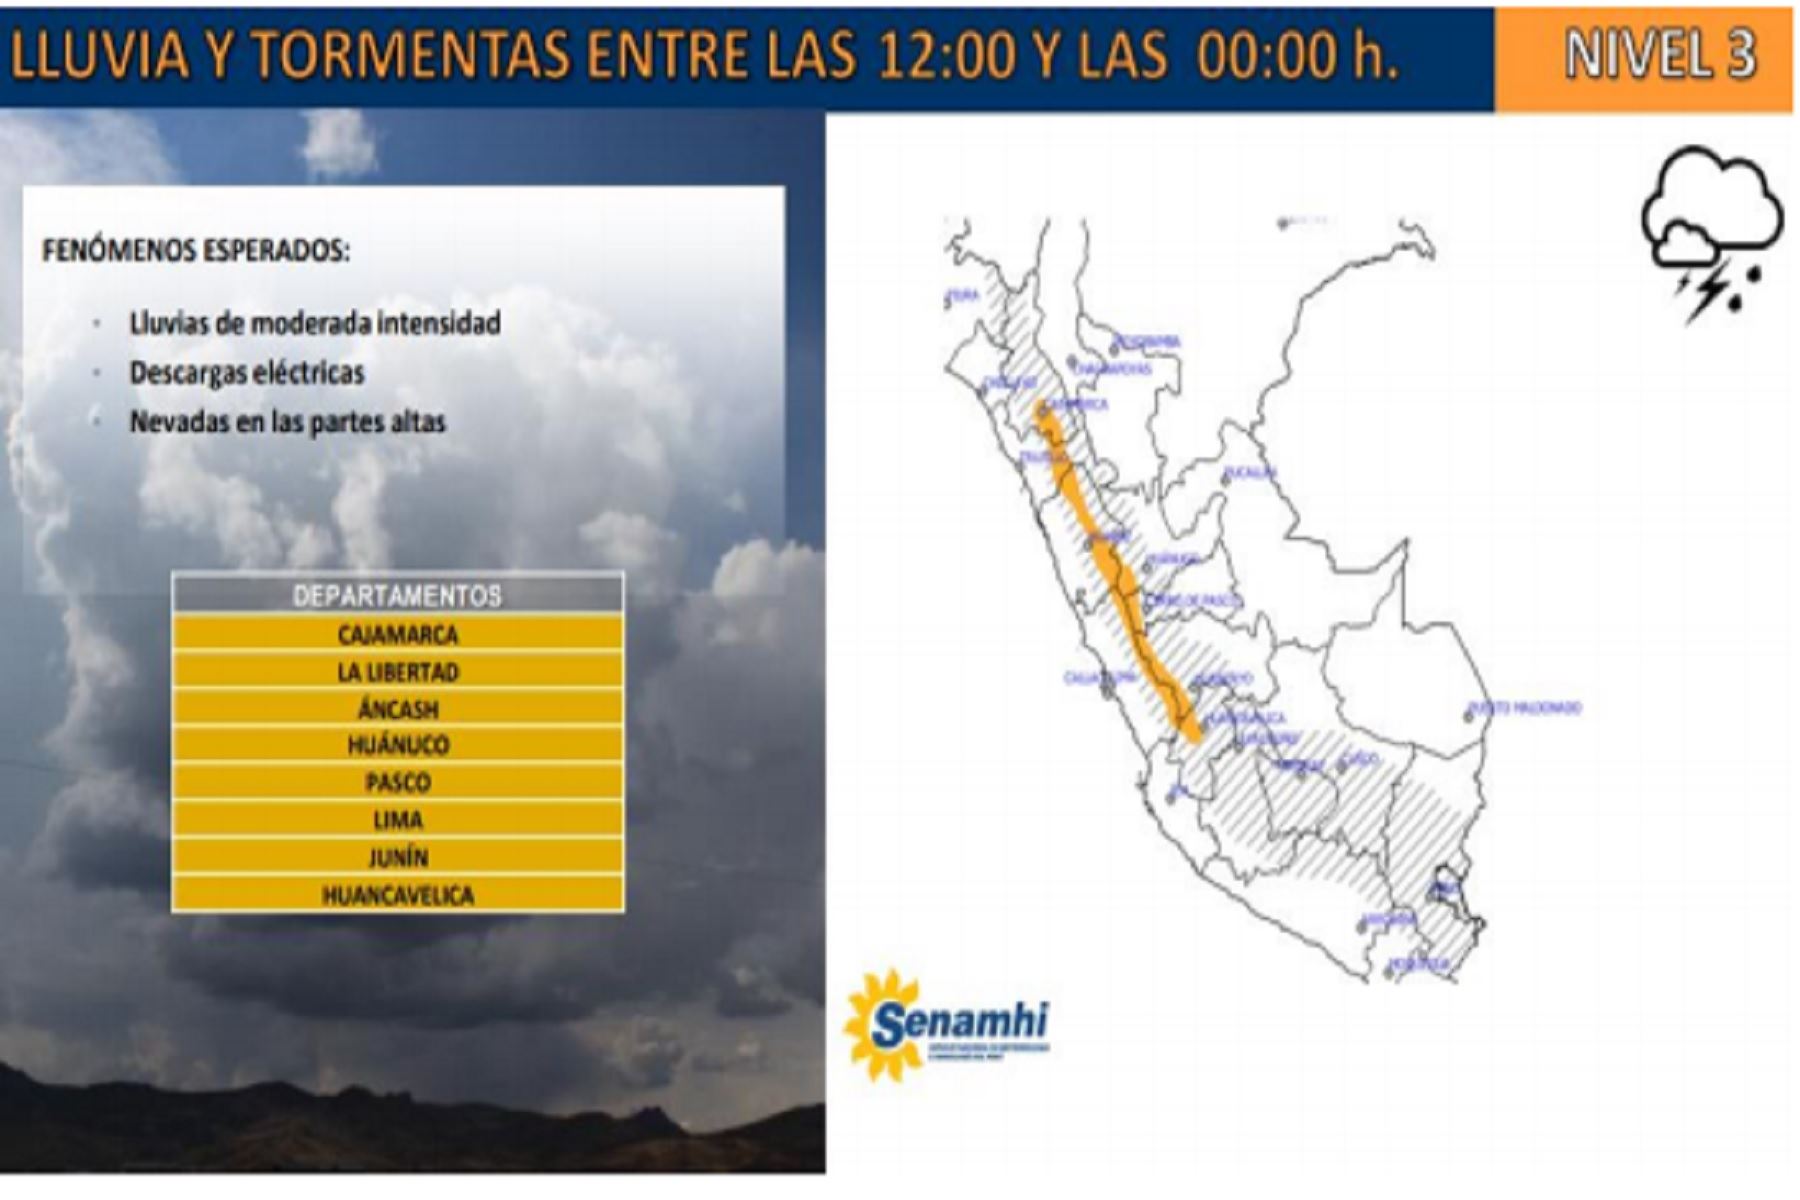 Lluvia se presentarían en Cajamarca, La Libertad, Áncash, Huánuco, Pasco, Lima, Junín y Huancavelica.